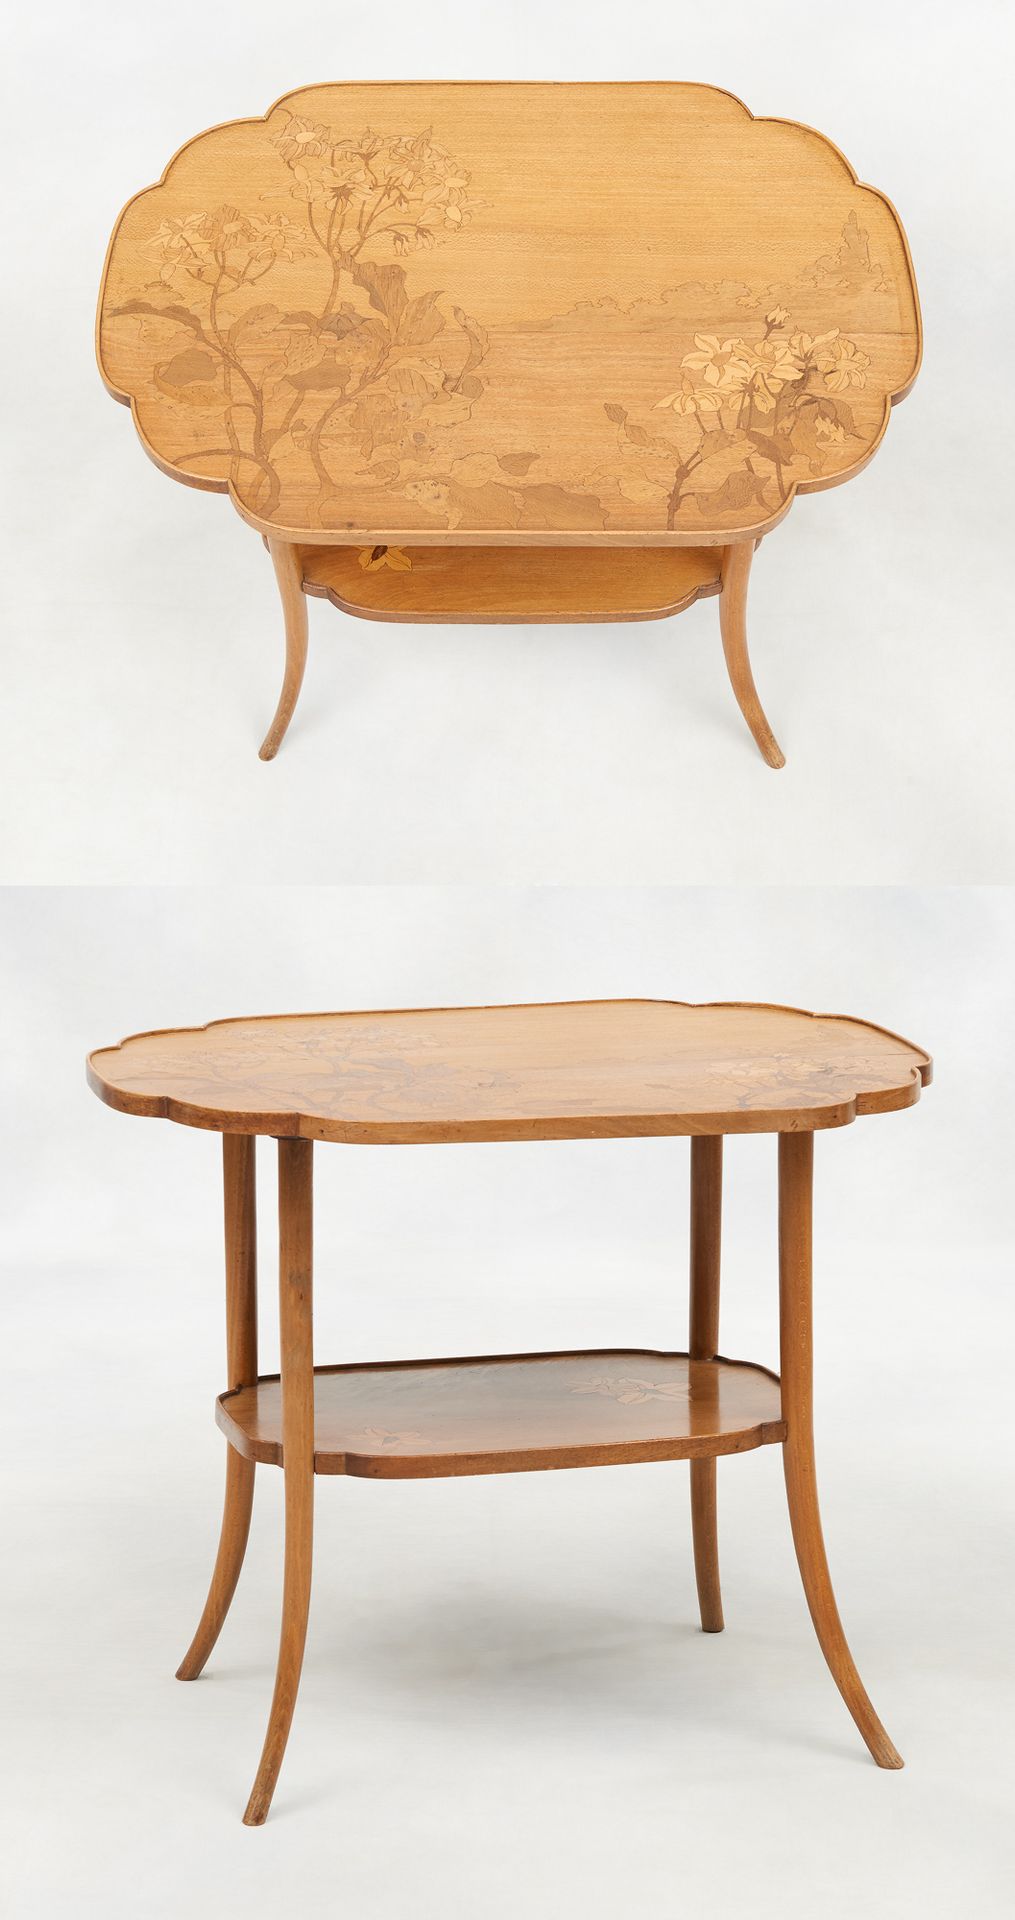 Émile Gallé (École française 1846-1904). Piece of furniture: Side table with two&hellip;